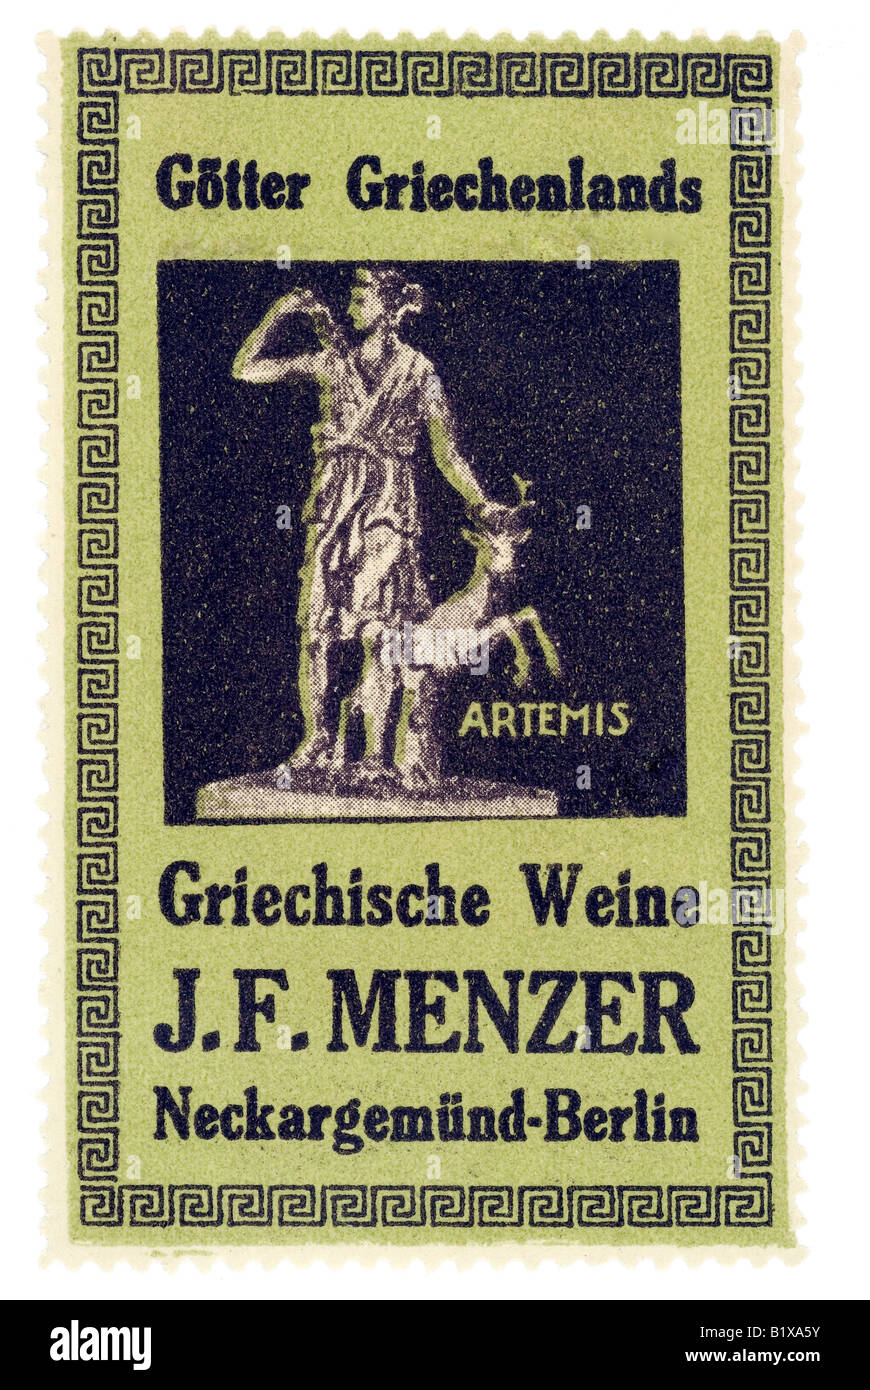 trading stamp wine Götter Griechenlands Griechische Weine J F Menzer Neckargemünd Berlin Artemis Stock Photo